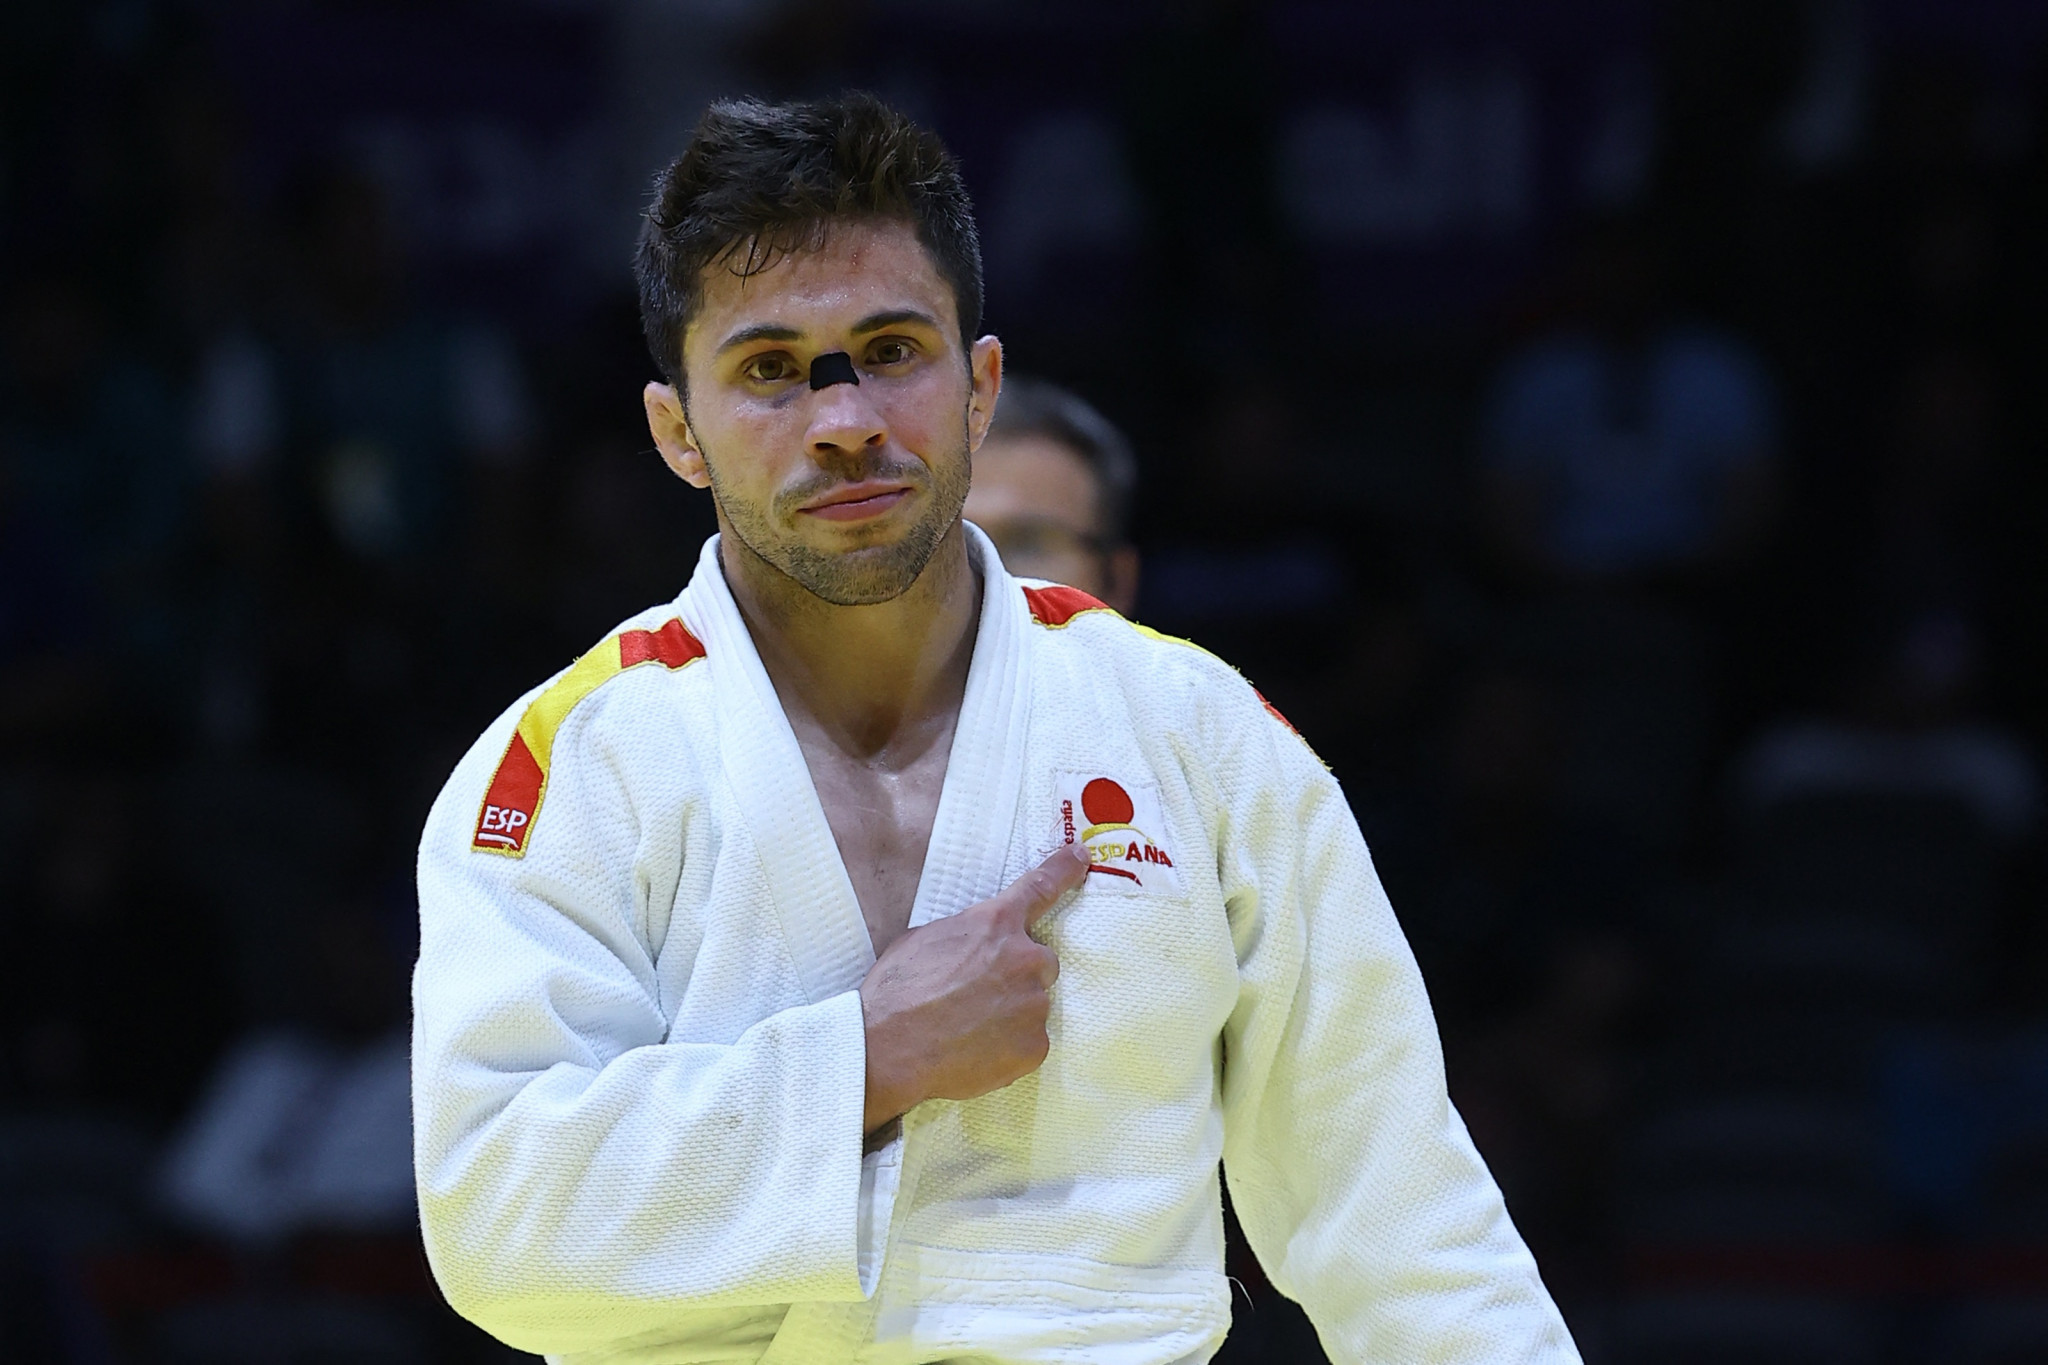 Francisco Garrigos delivered men's under-60kg gold for Spain ©Getty Images